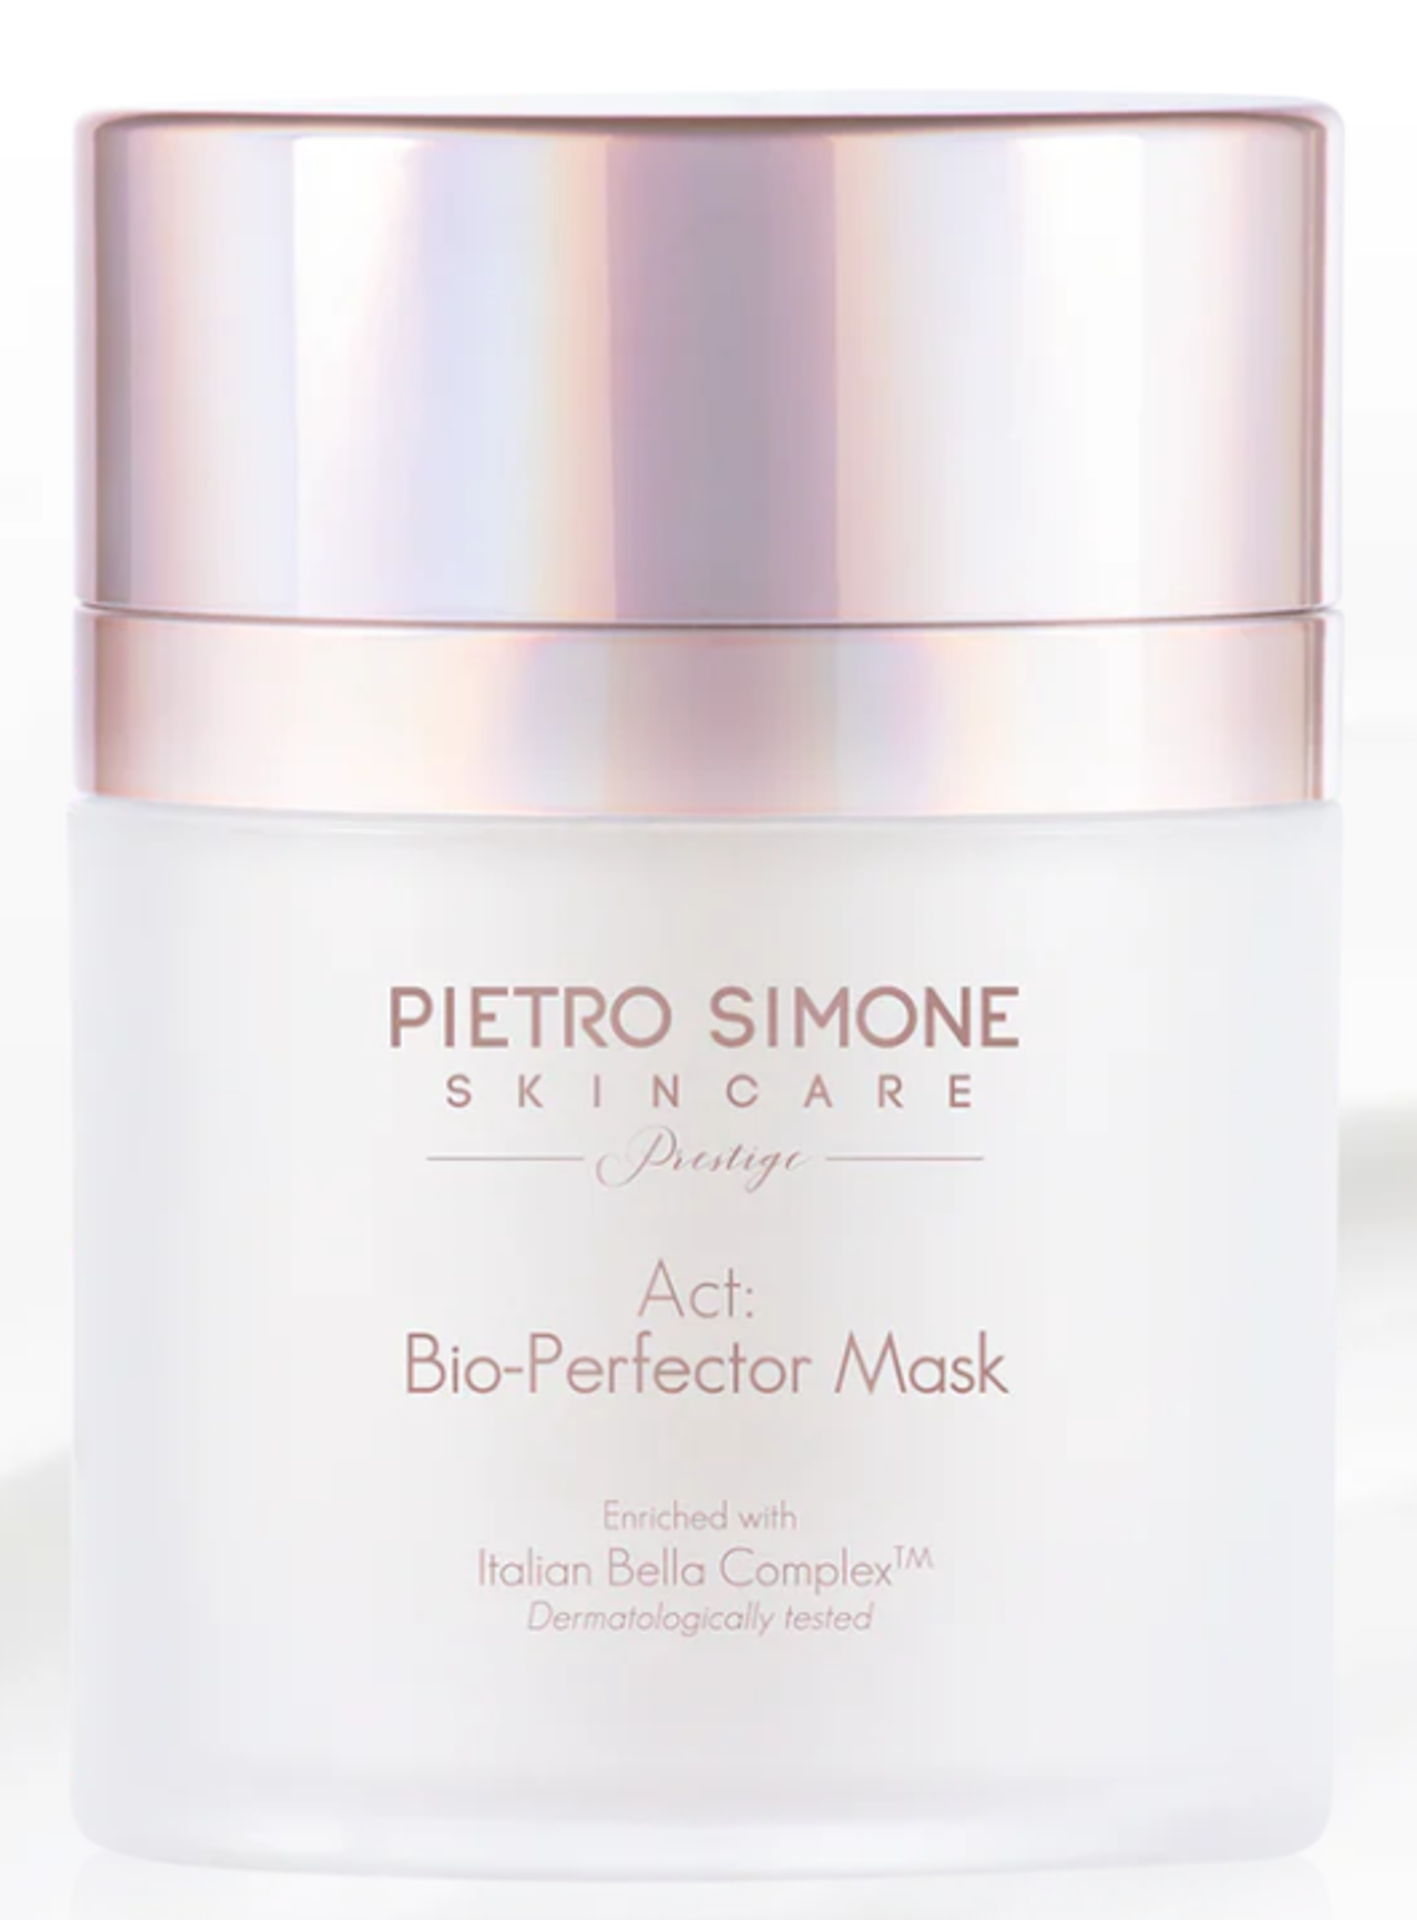 Pietro Simone Skincare: PRESTIGE ACT: BIO-PERFECTOR MASK 80ML. RRP £160.00. The Bio-Perfector Mask